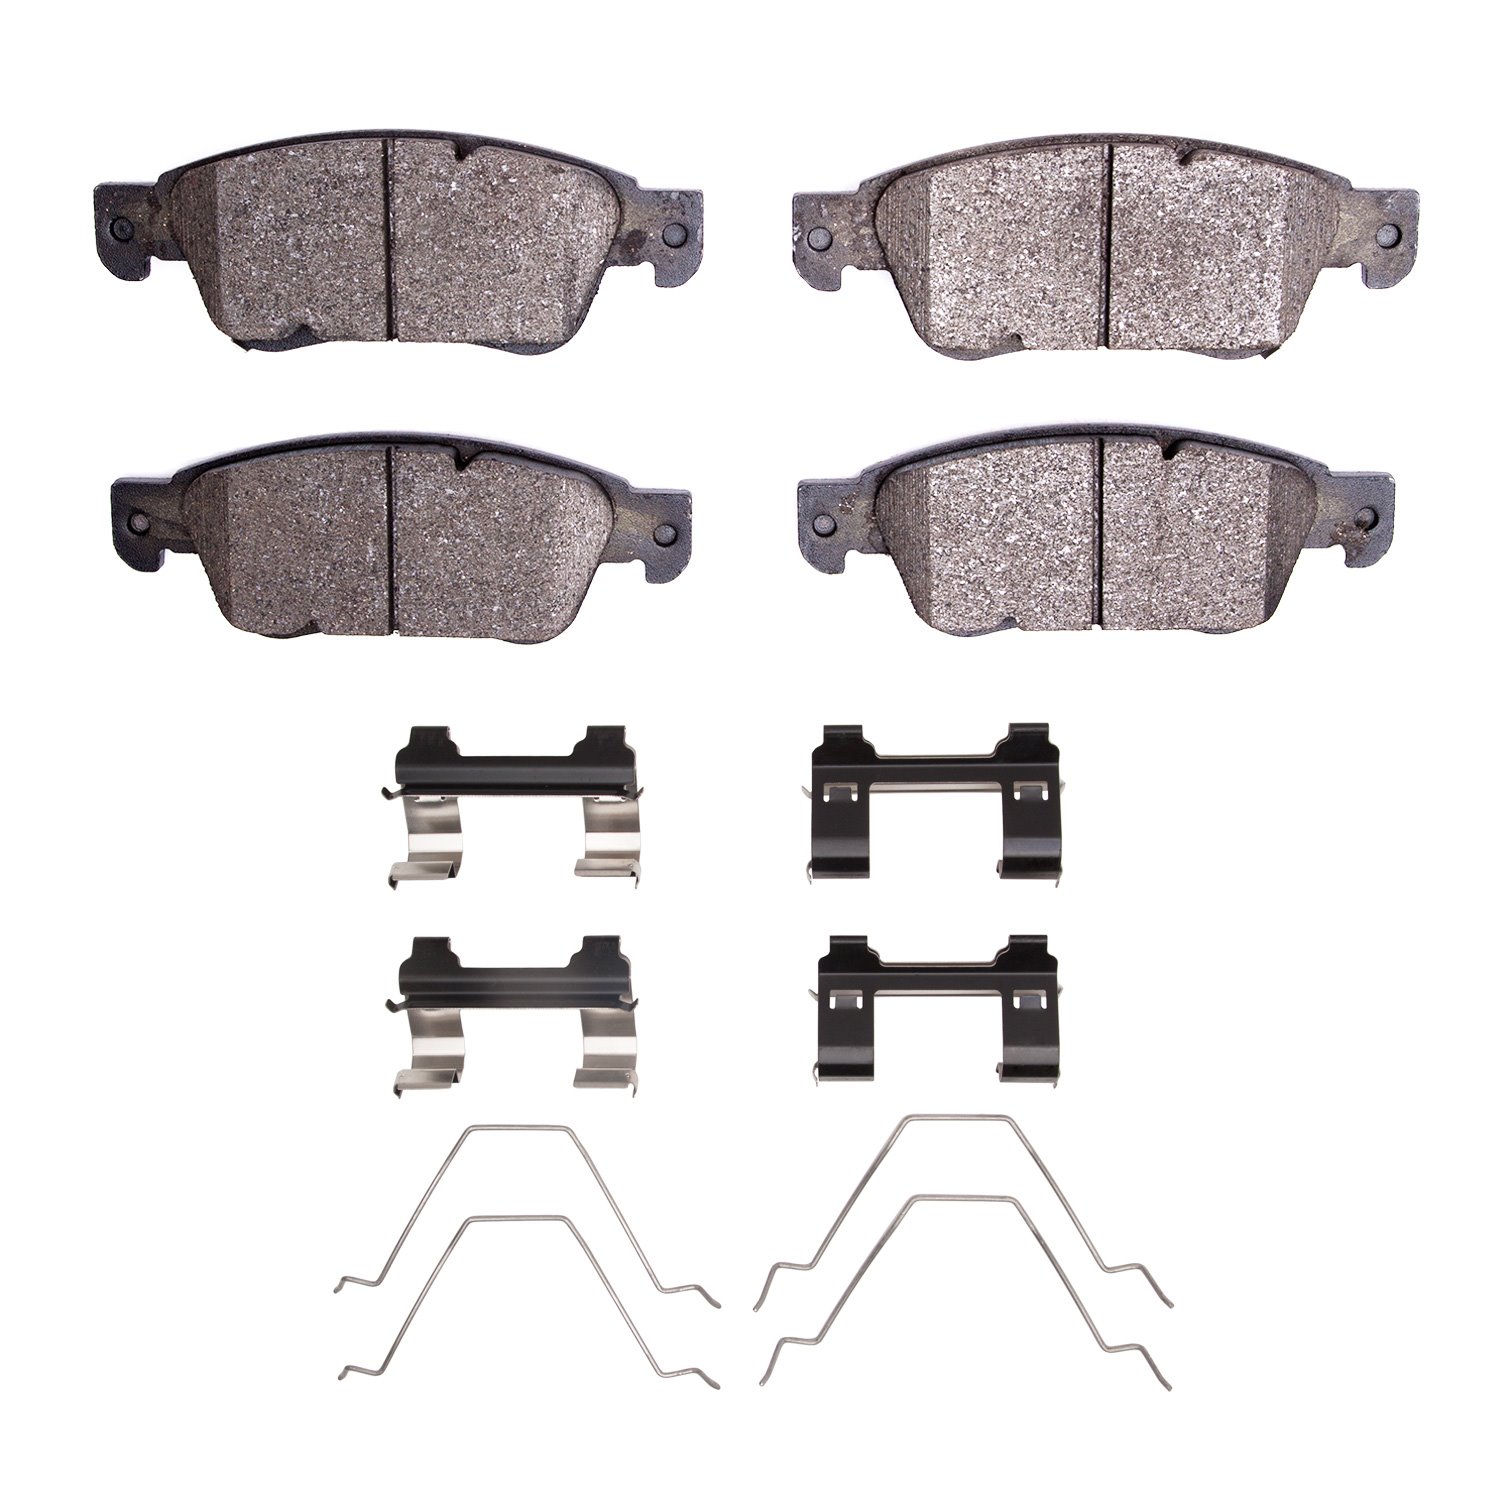 1310-1287-01 3000-Series Ceramic Brake Pads & Hardware Kit, 2007-2015 Infiniti/Nissan, Position: Front